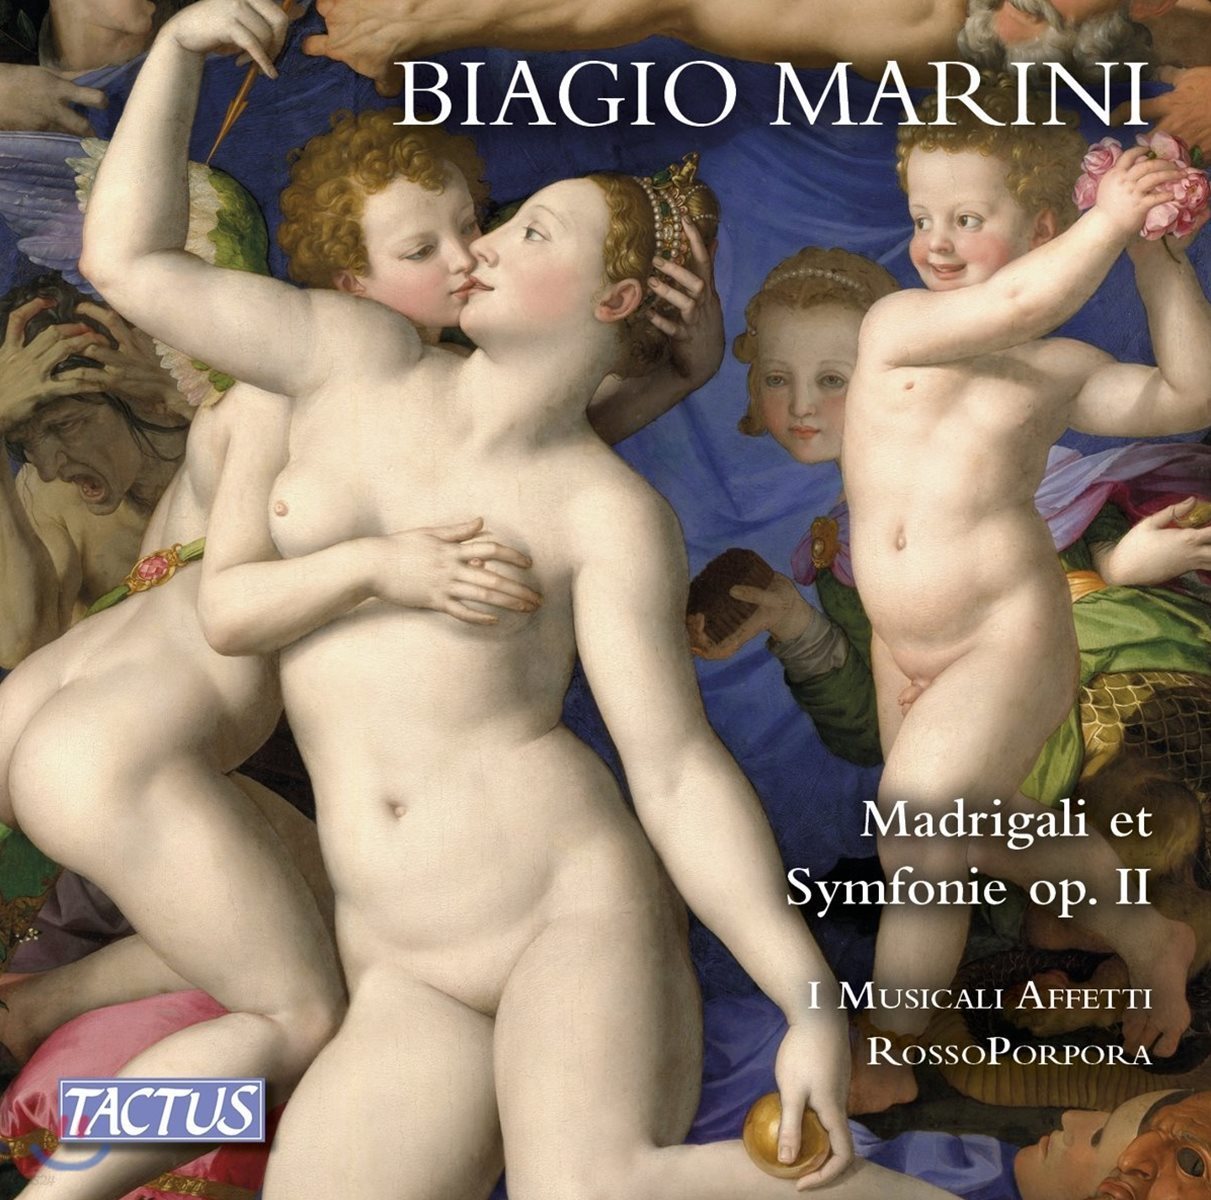 I Musicali Affetti 비아지오 마리니: 마드리갈과 심포니, Op. 2 (1618) - 파비오 미사지아, 이 무지칼리 아페티, 로소포르포라, 발터 테스톨린 (Biagio Marini: Madrigali &amp; Symphonie Op.II)